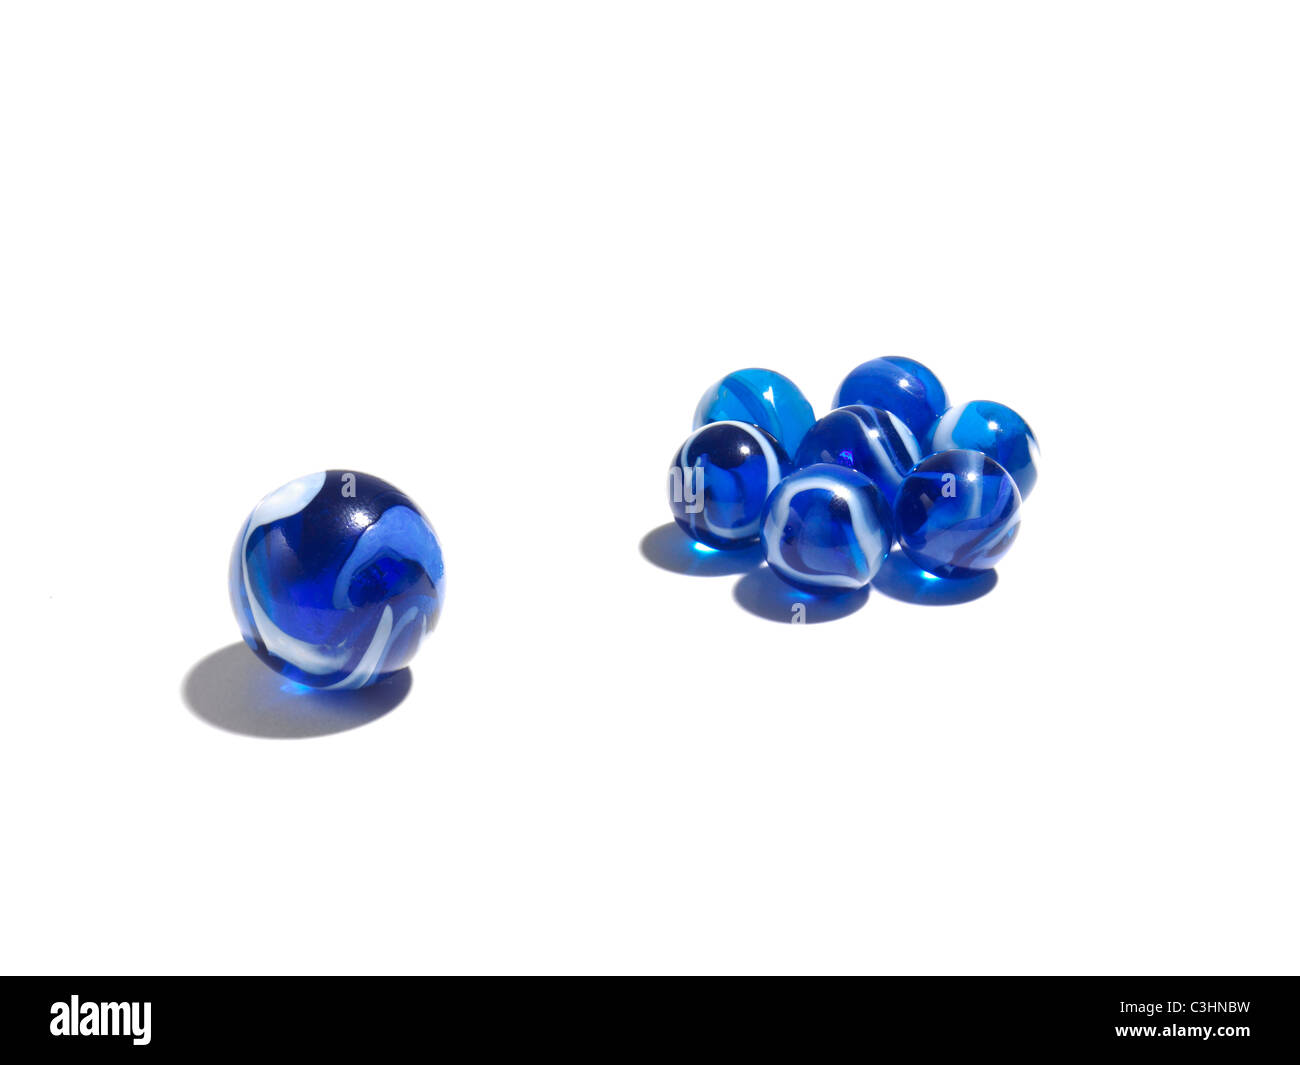 Blaues Glaskugeln in zwei verschiedenen Größen Stockfoto